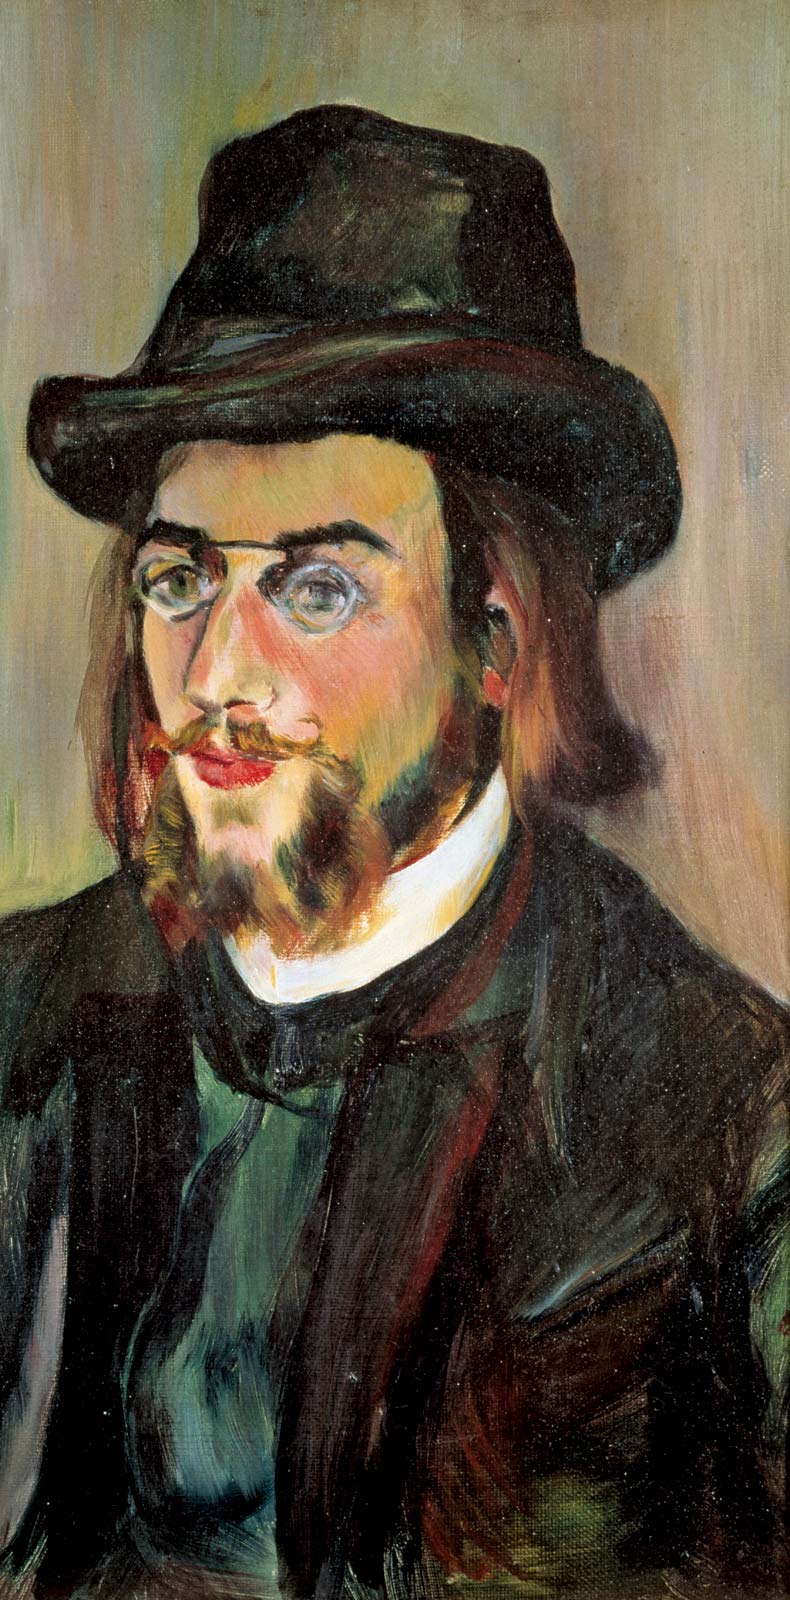 Erik Satie, by Suzanne Valadon, 1892